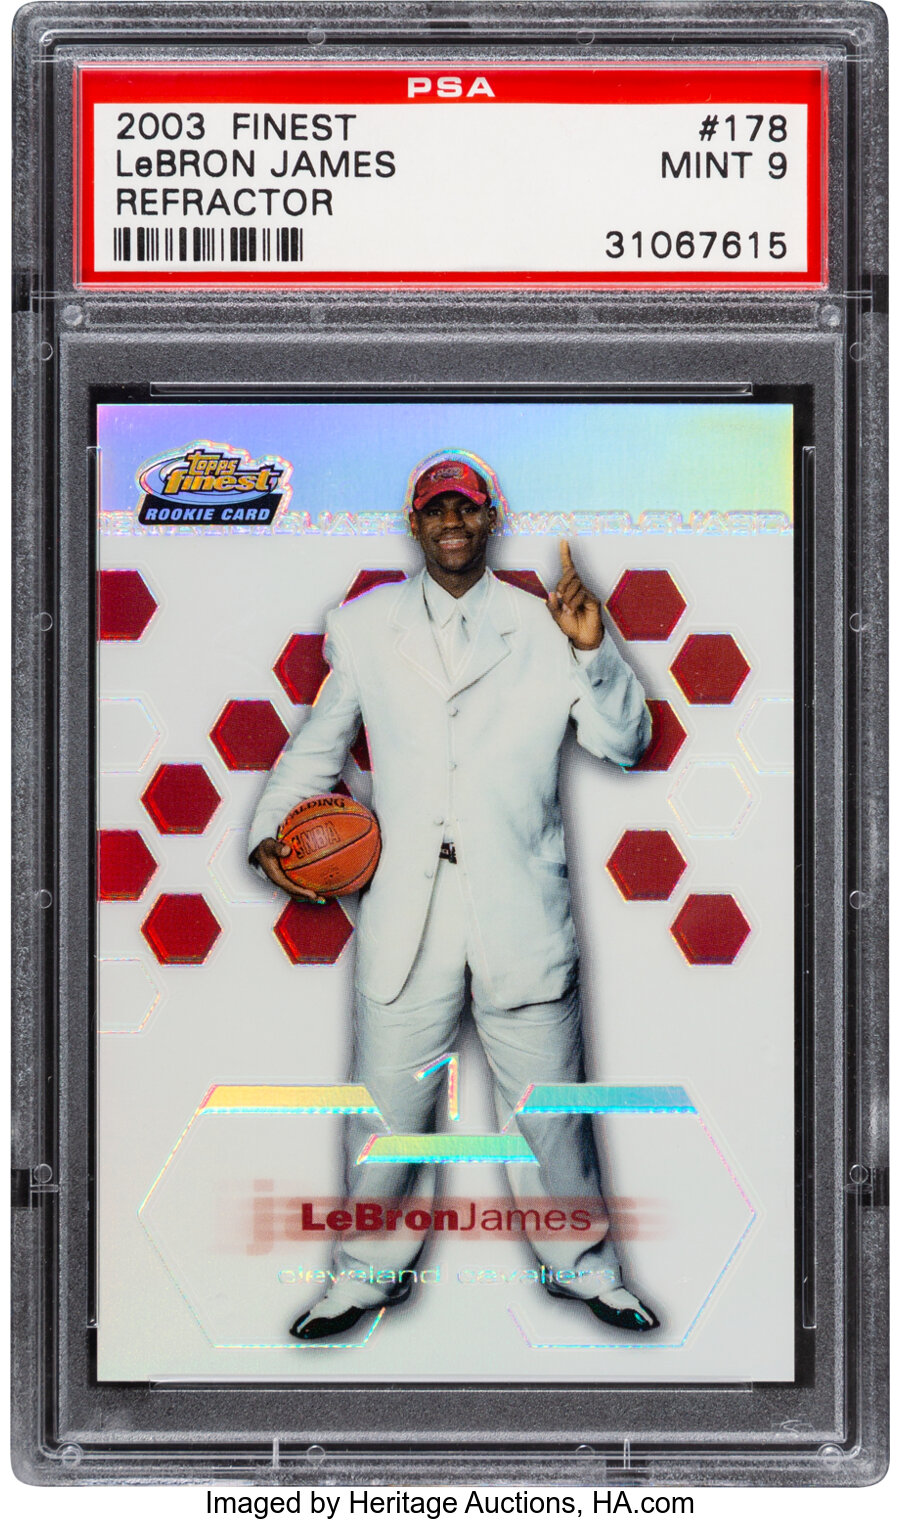 2002 Finest LeBron James (Refractor) #178 PSA Mint 9 - #'d 147/250